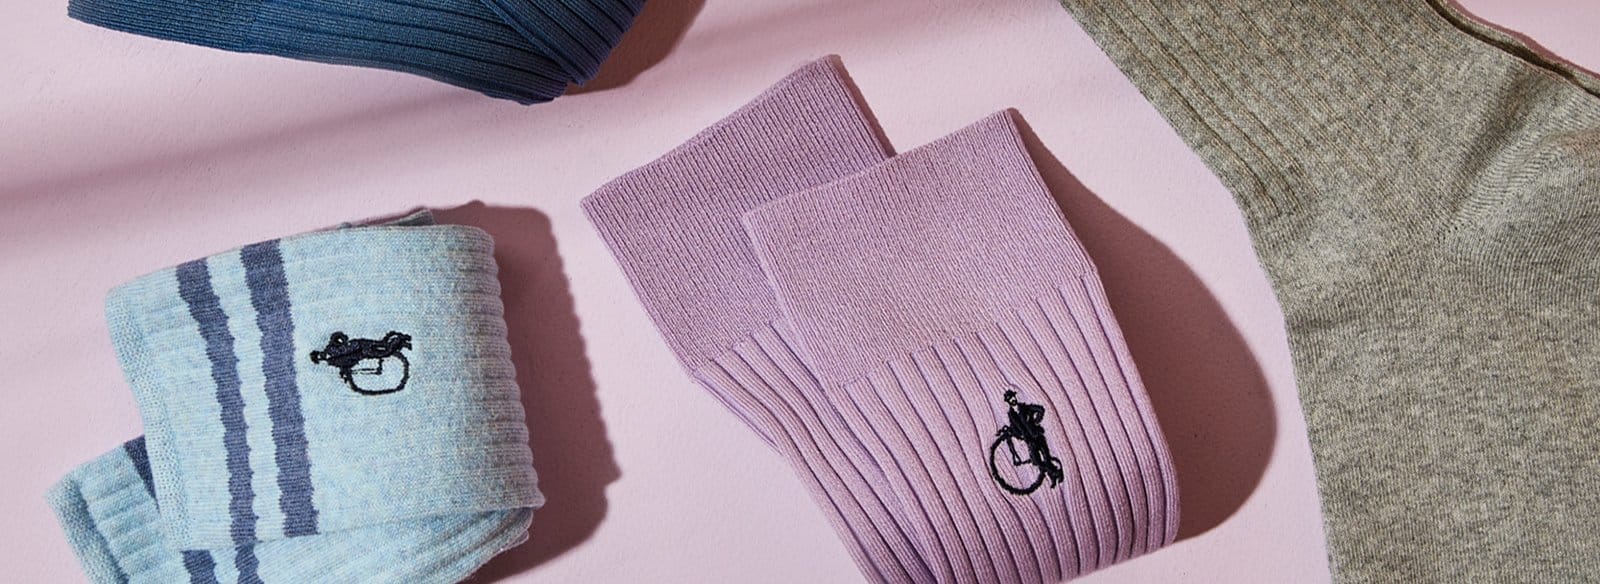 Men’s Style Tips: How to wear lavender purple socks